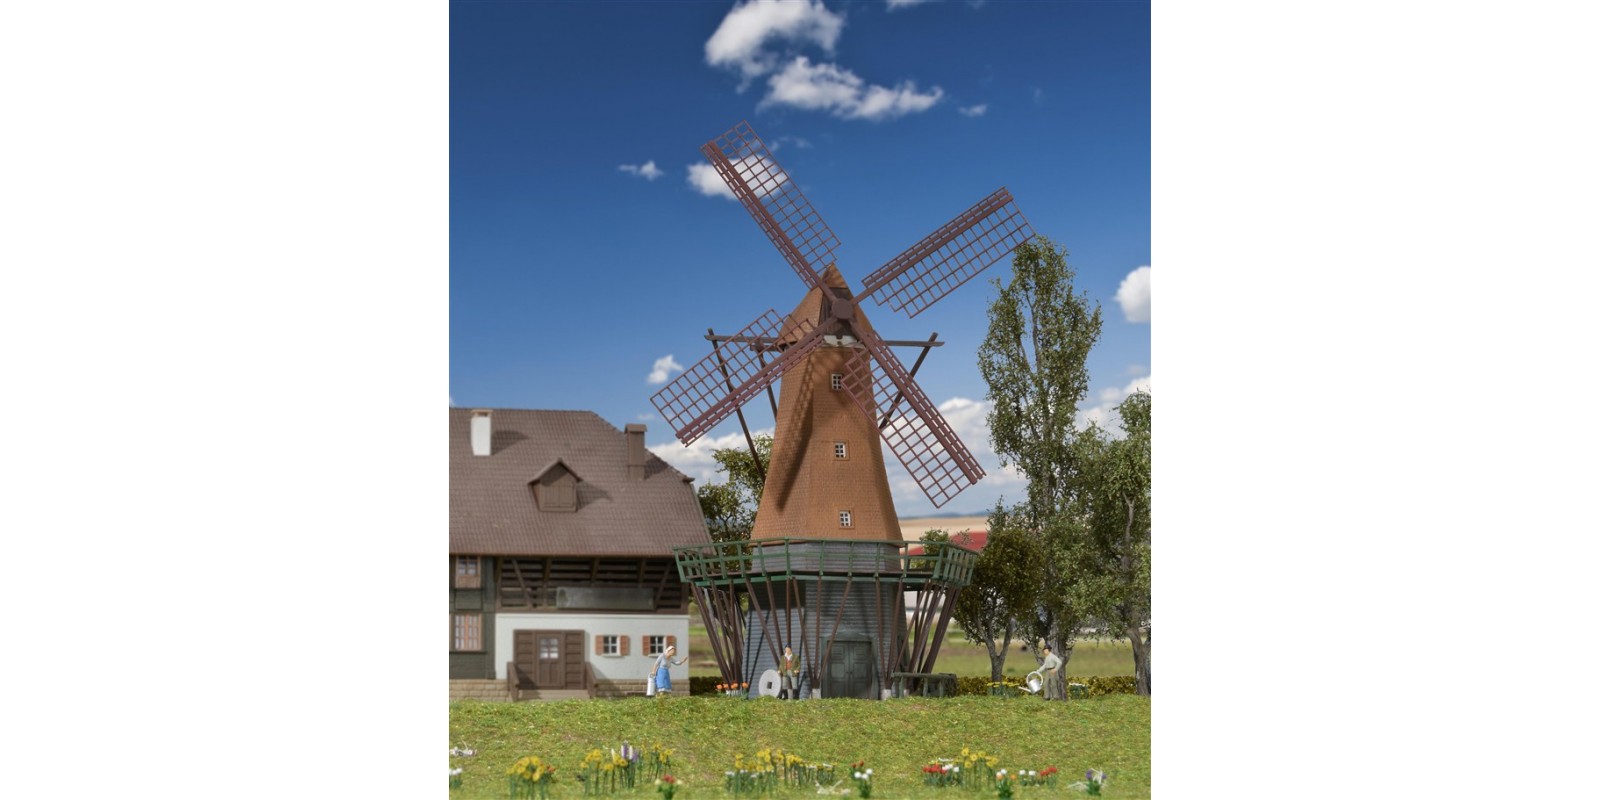 KI39150 H0 Windmill on Fehmarn